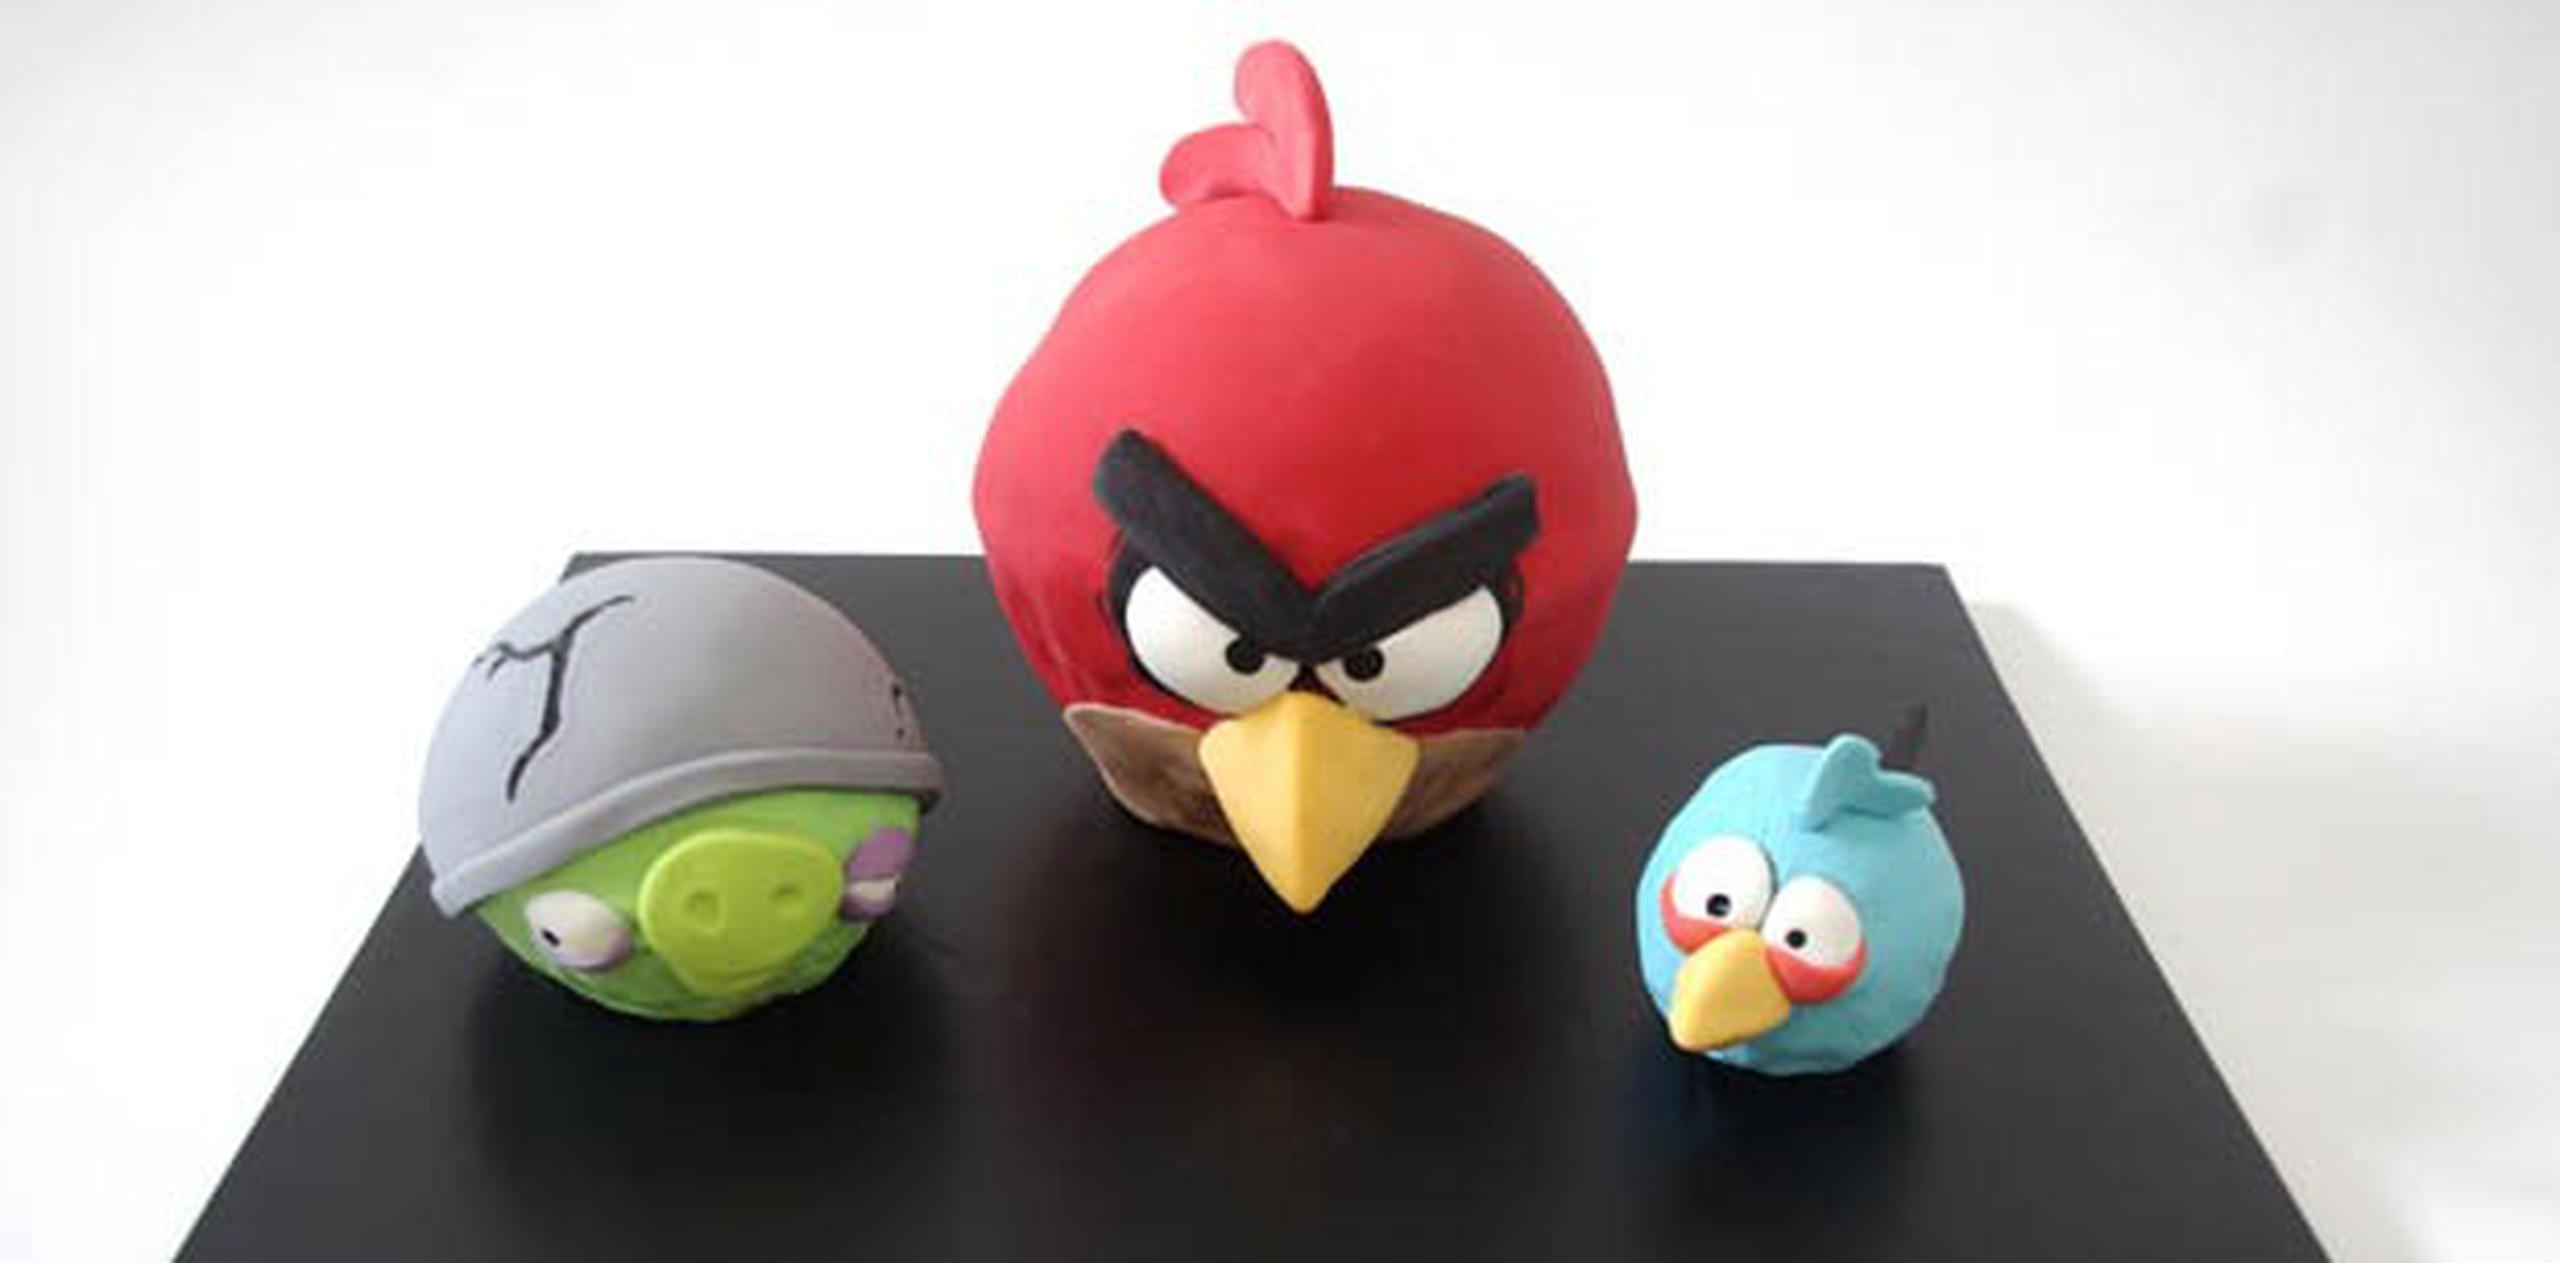 La Agencia de Seguridad Nacional (NSA) utiliza aplicaciones vulnerables como el juego "Angry Birds" para acceder a información personal o datos de localización en todo el mundo. (Archivo)